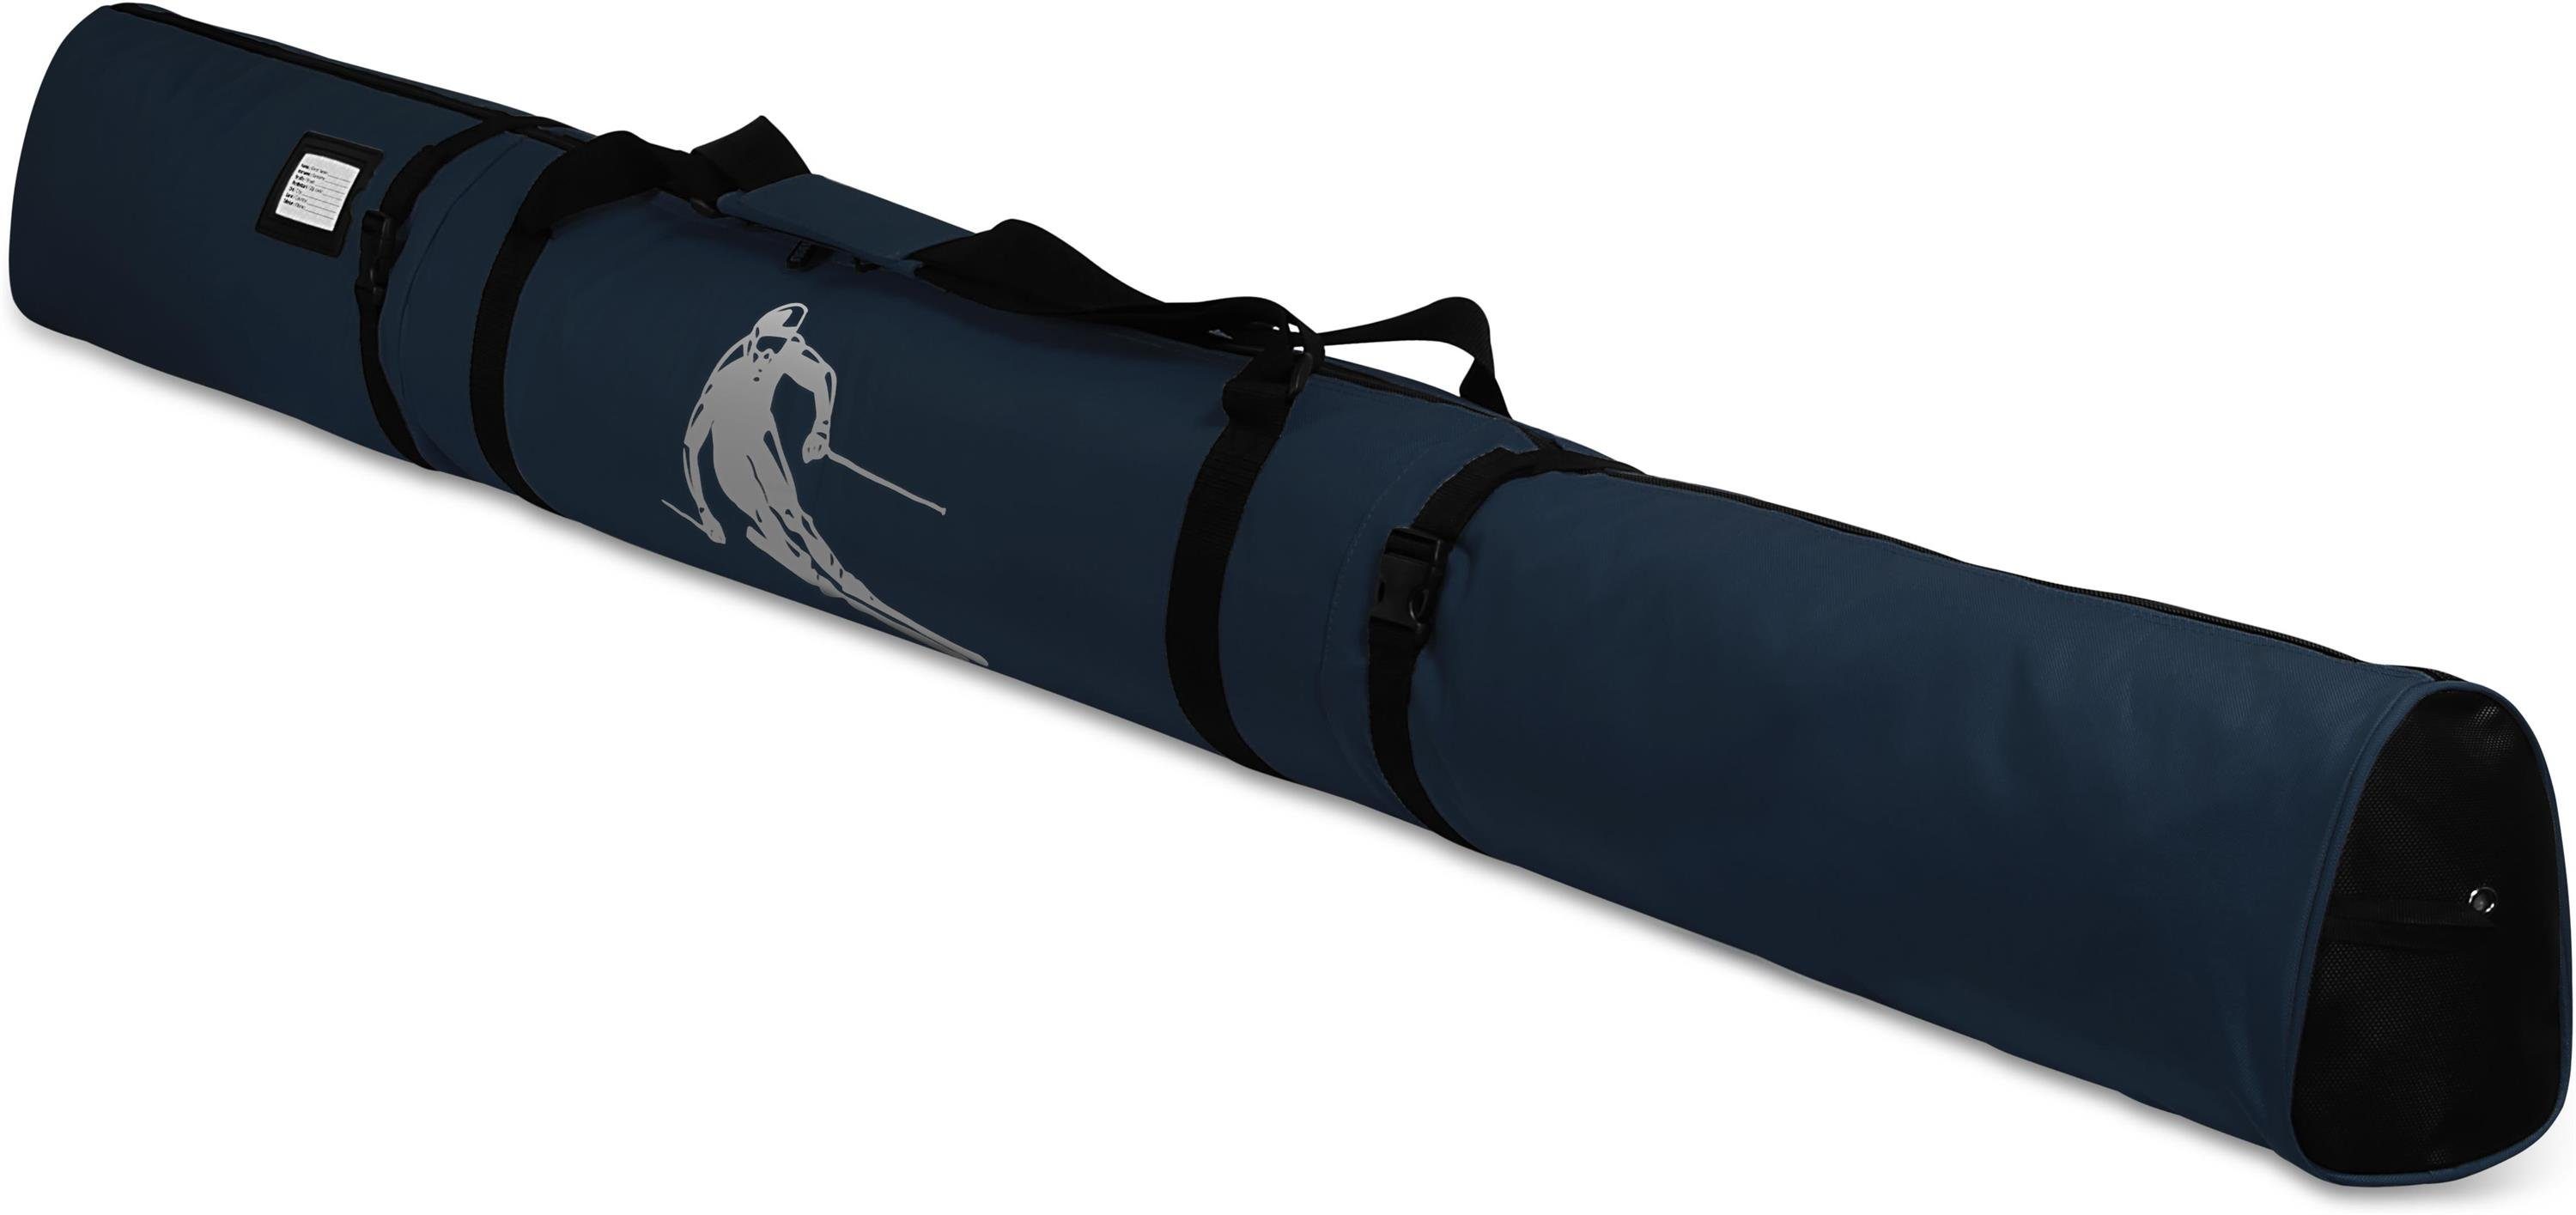 Skier Skistöcke und Skisack 200, normani - Sporttasche Skitasche Alpine für Skitasche Navy Aufbewahrungstasche Run Transporttasche